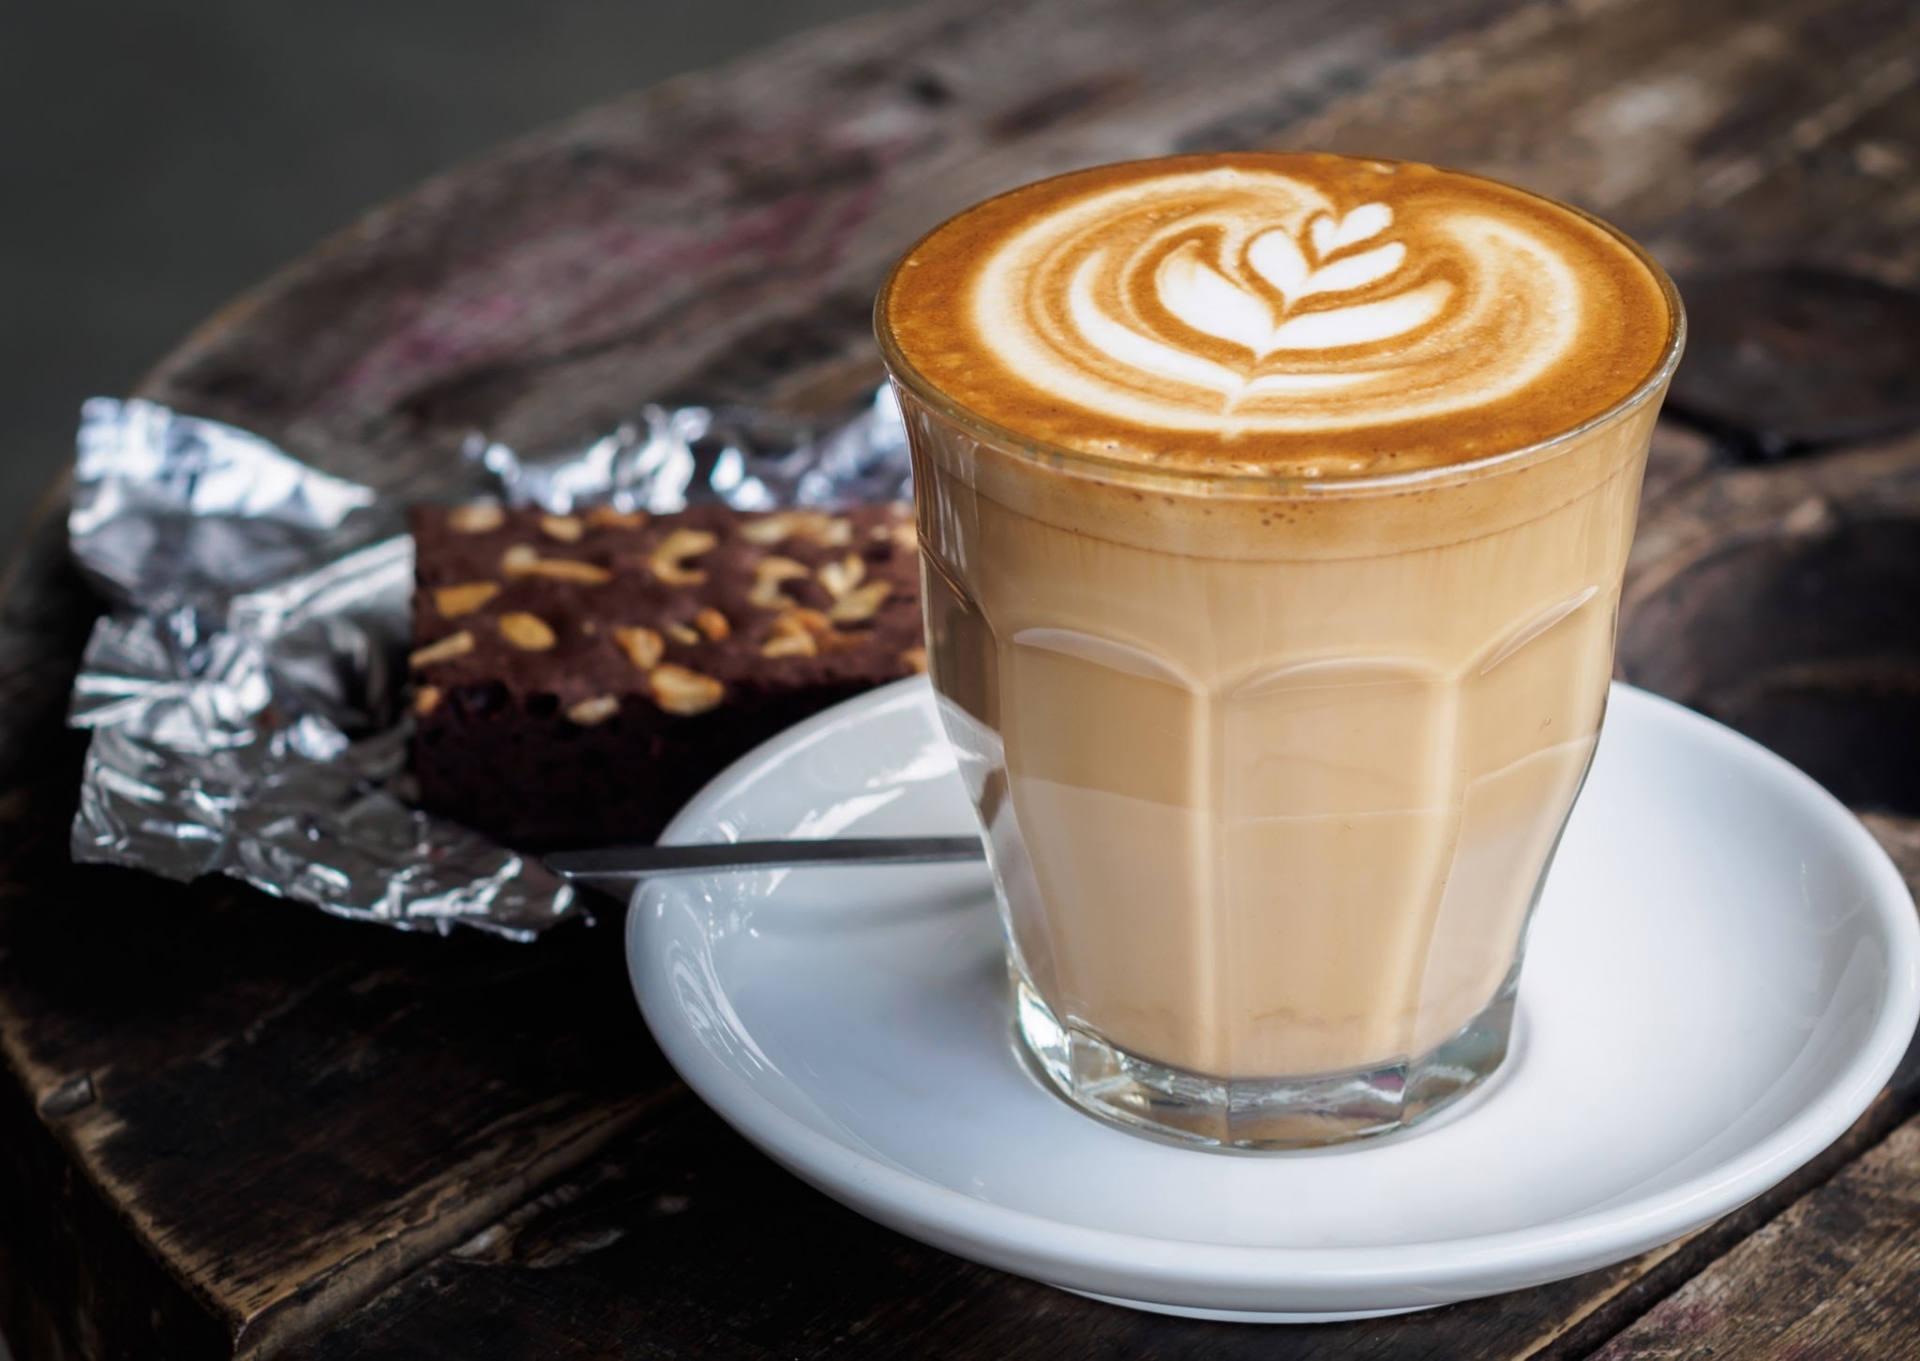 Latte thường được đựng trong ly lớn, có vị sữa nhiều hơn Cappuccino.